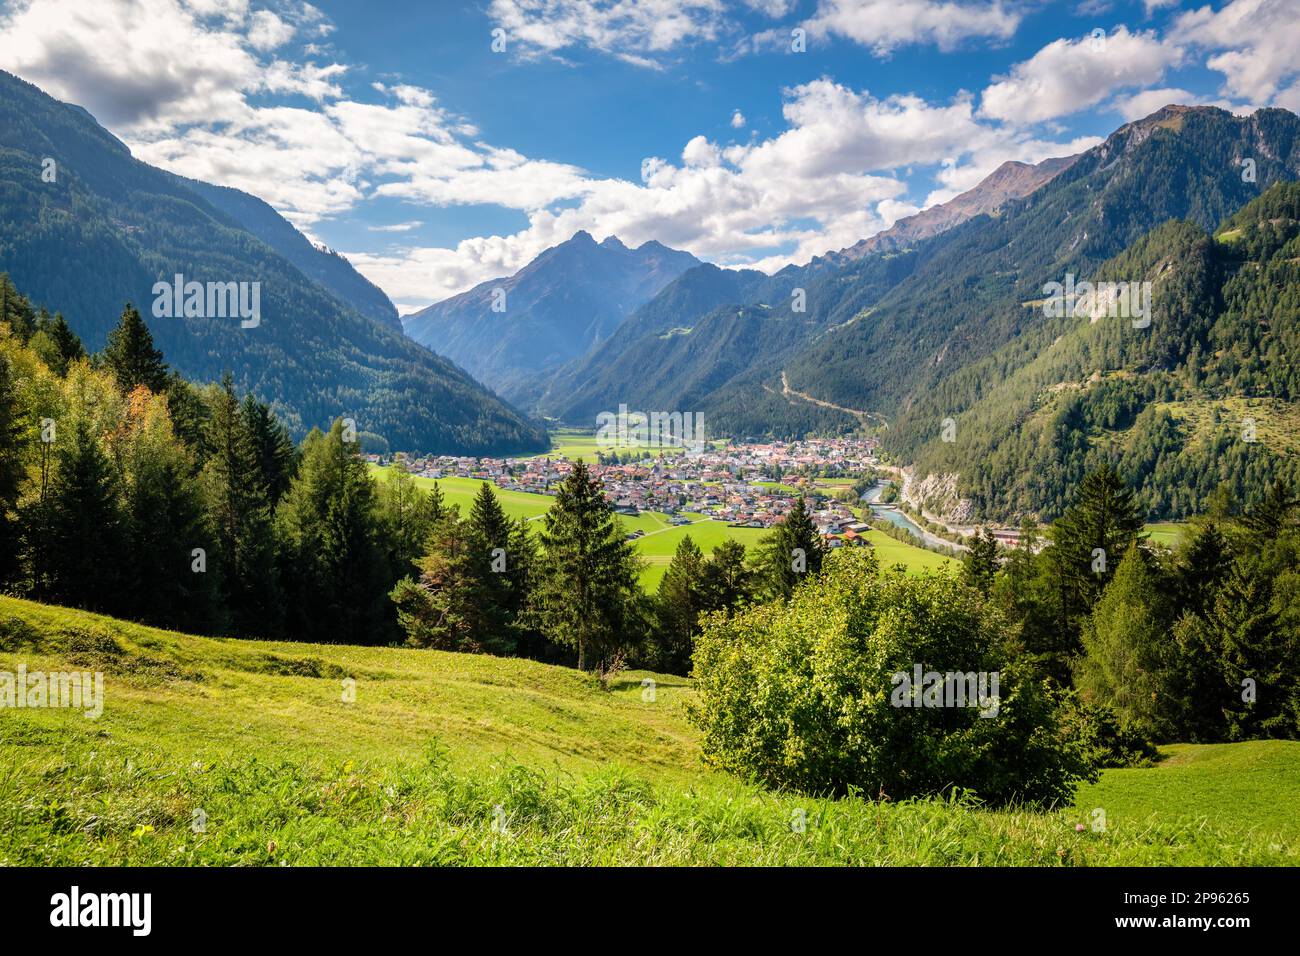 Pfunds ist ein Dorf im Inntal-Tal. Es liegt in einer Ecke Tirols an der Stelle, an der drei Länder (Österreich, Italien und die Schweiz) zusammentreffen Stockfoto